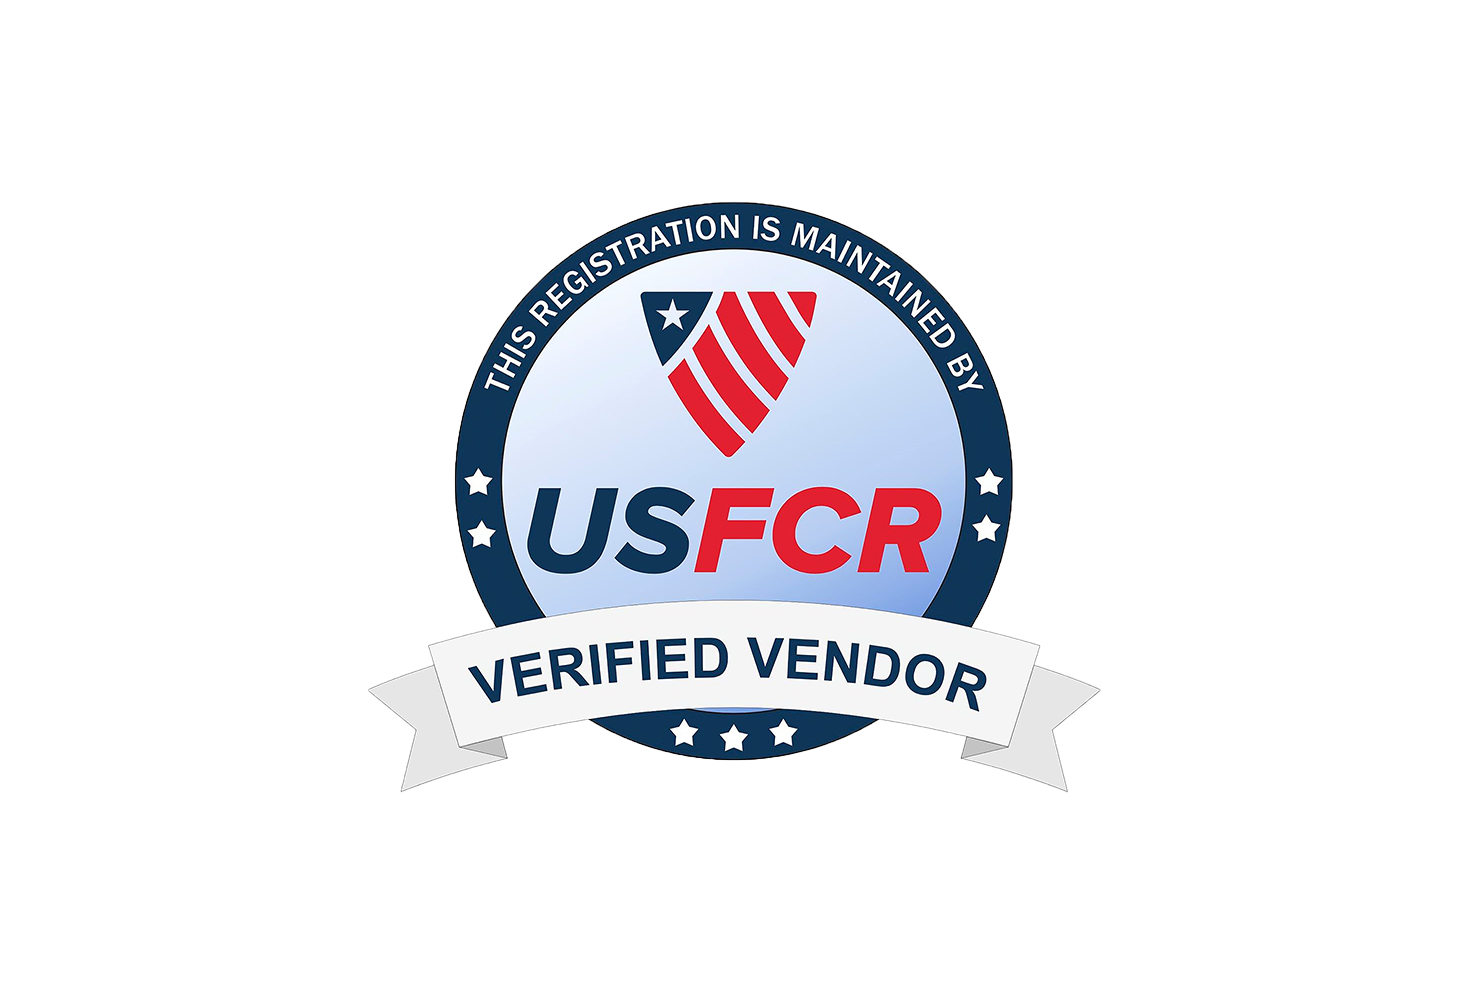 US FCR Verified Vendor